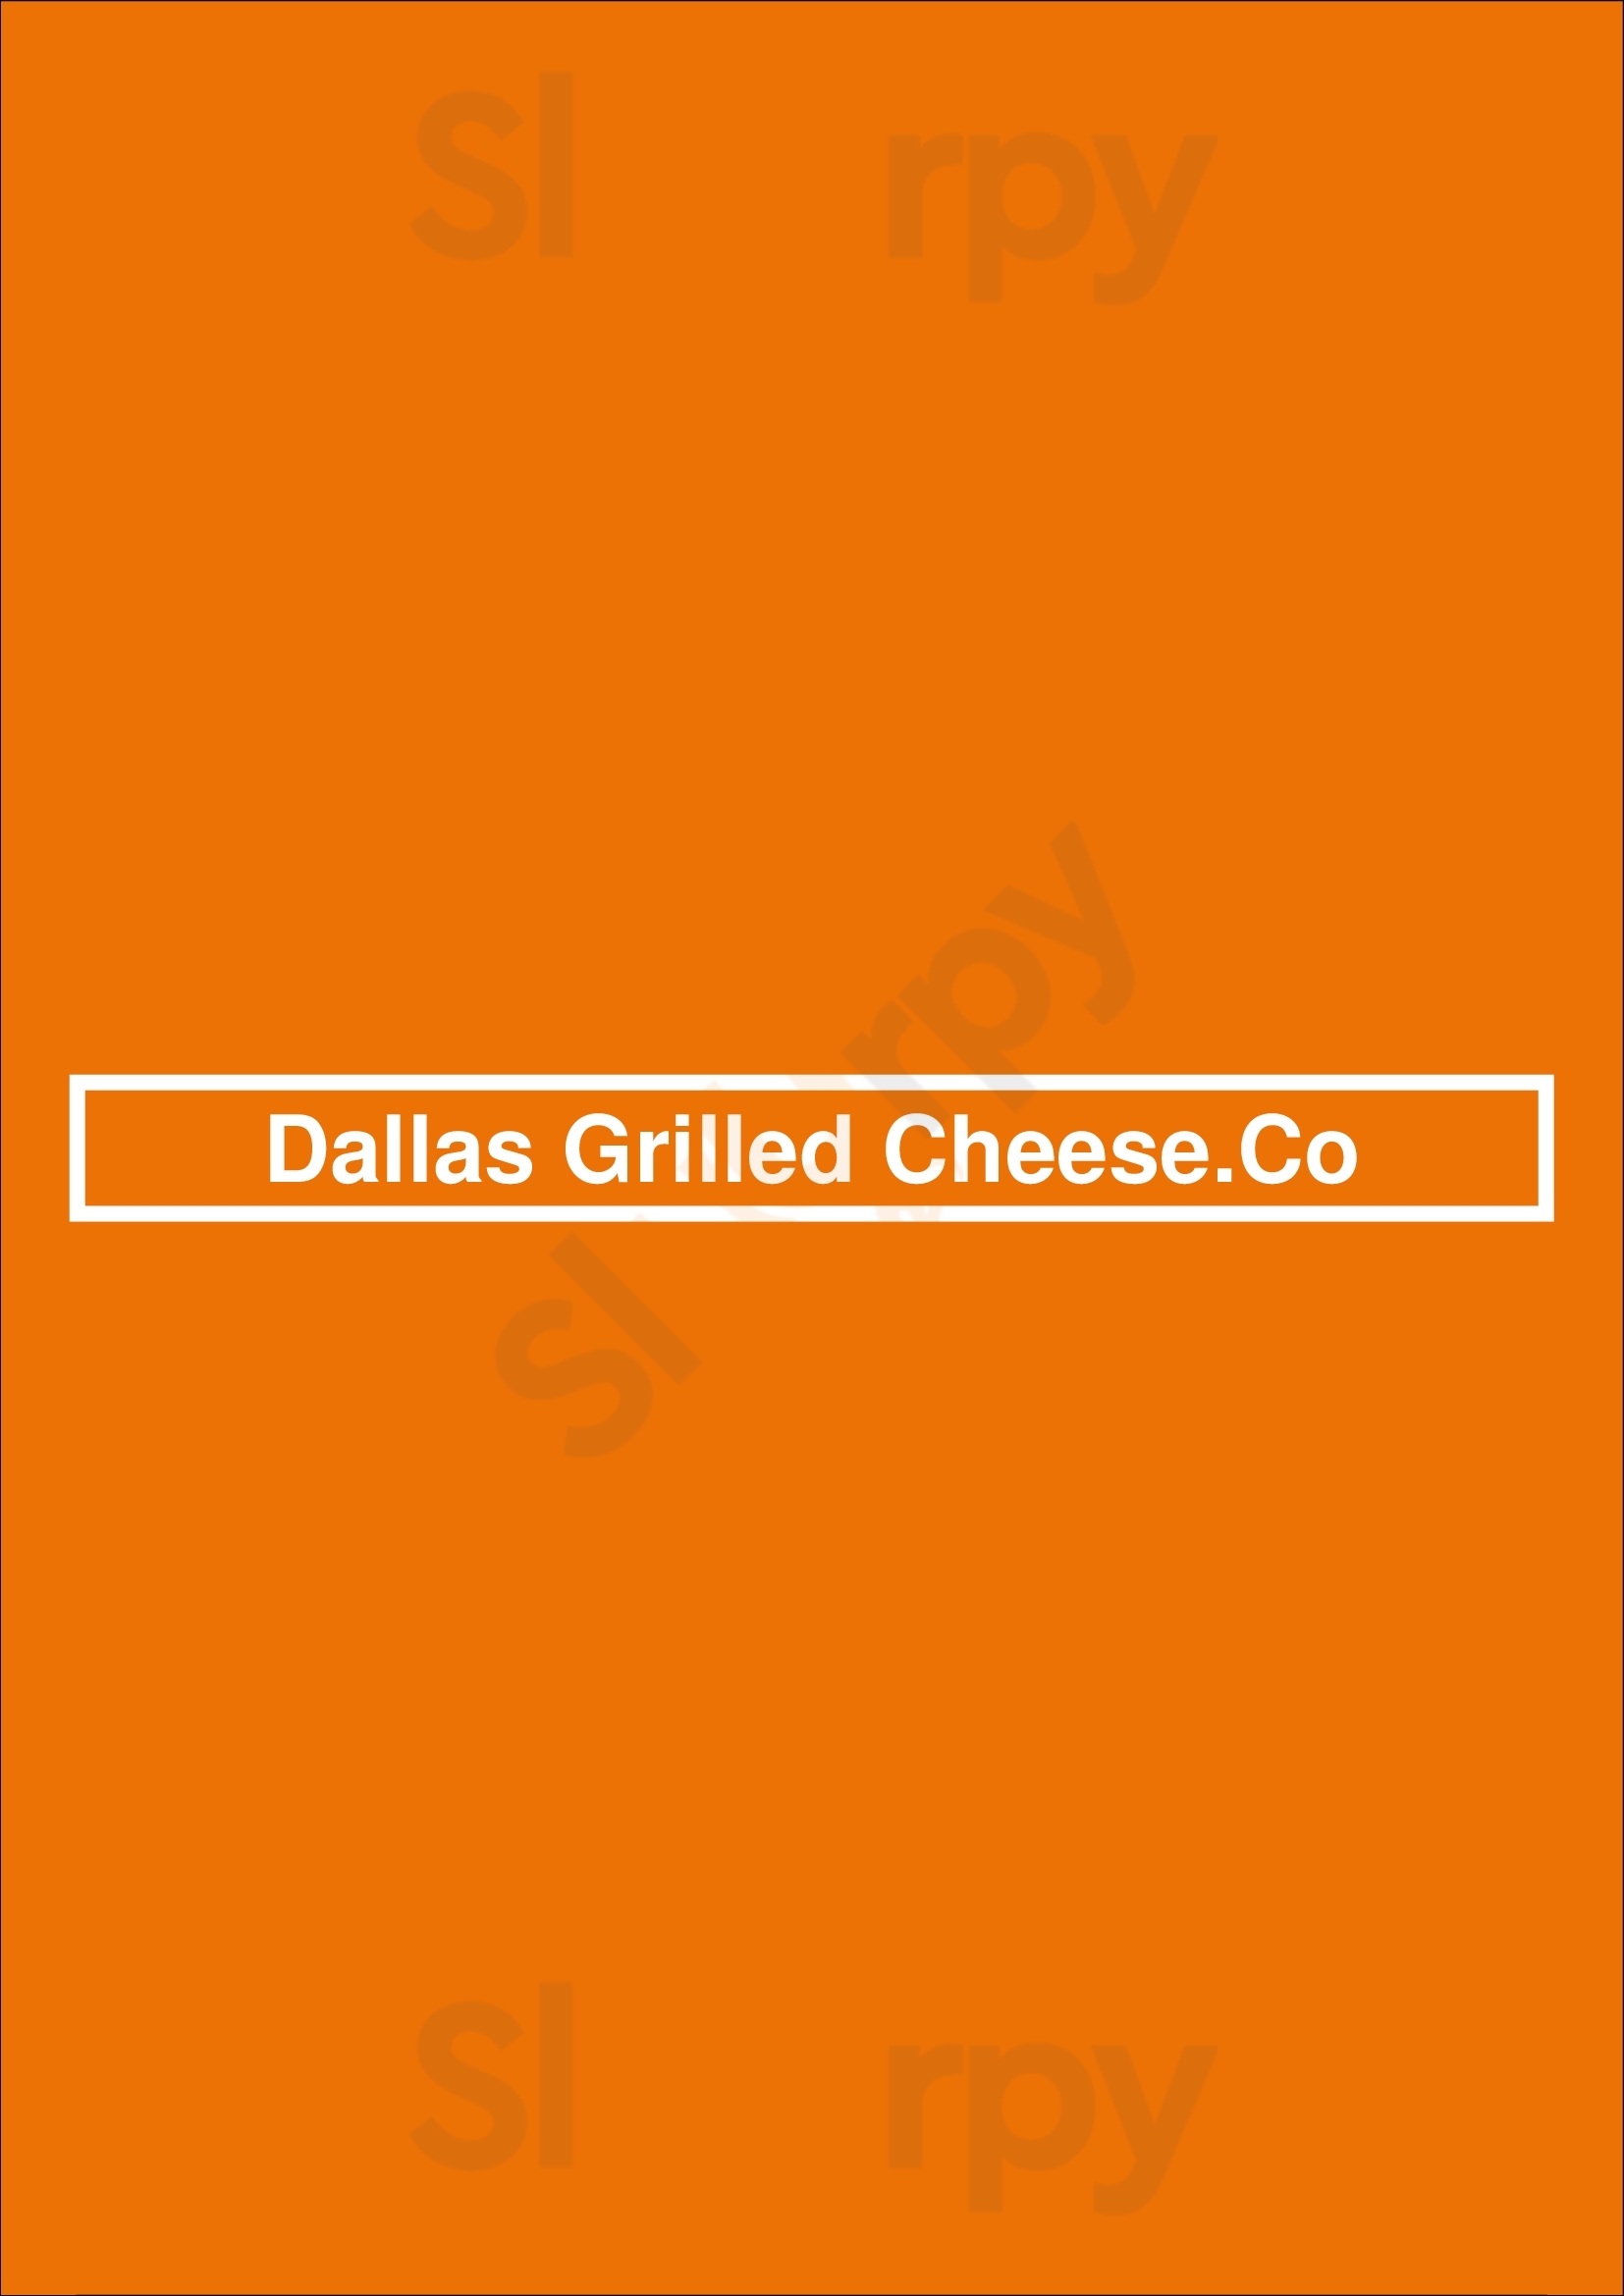 Dallas Grilled Cheese Company Dallas Menu - 1